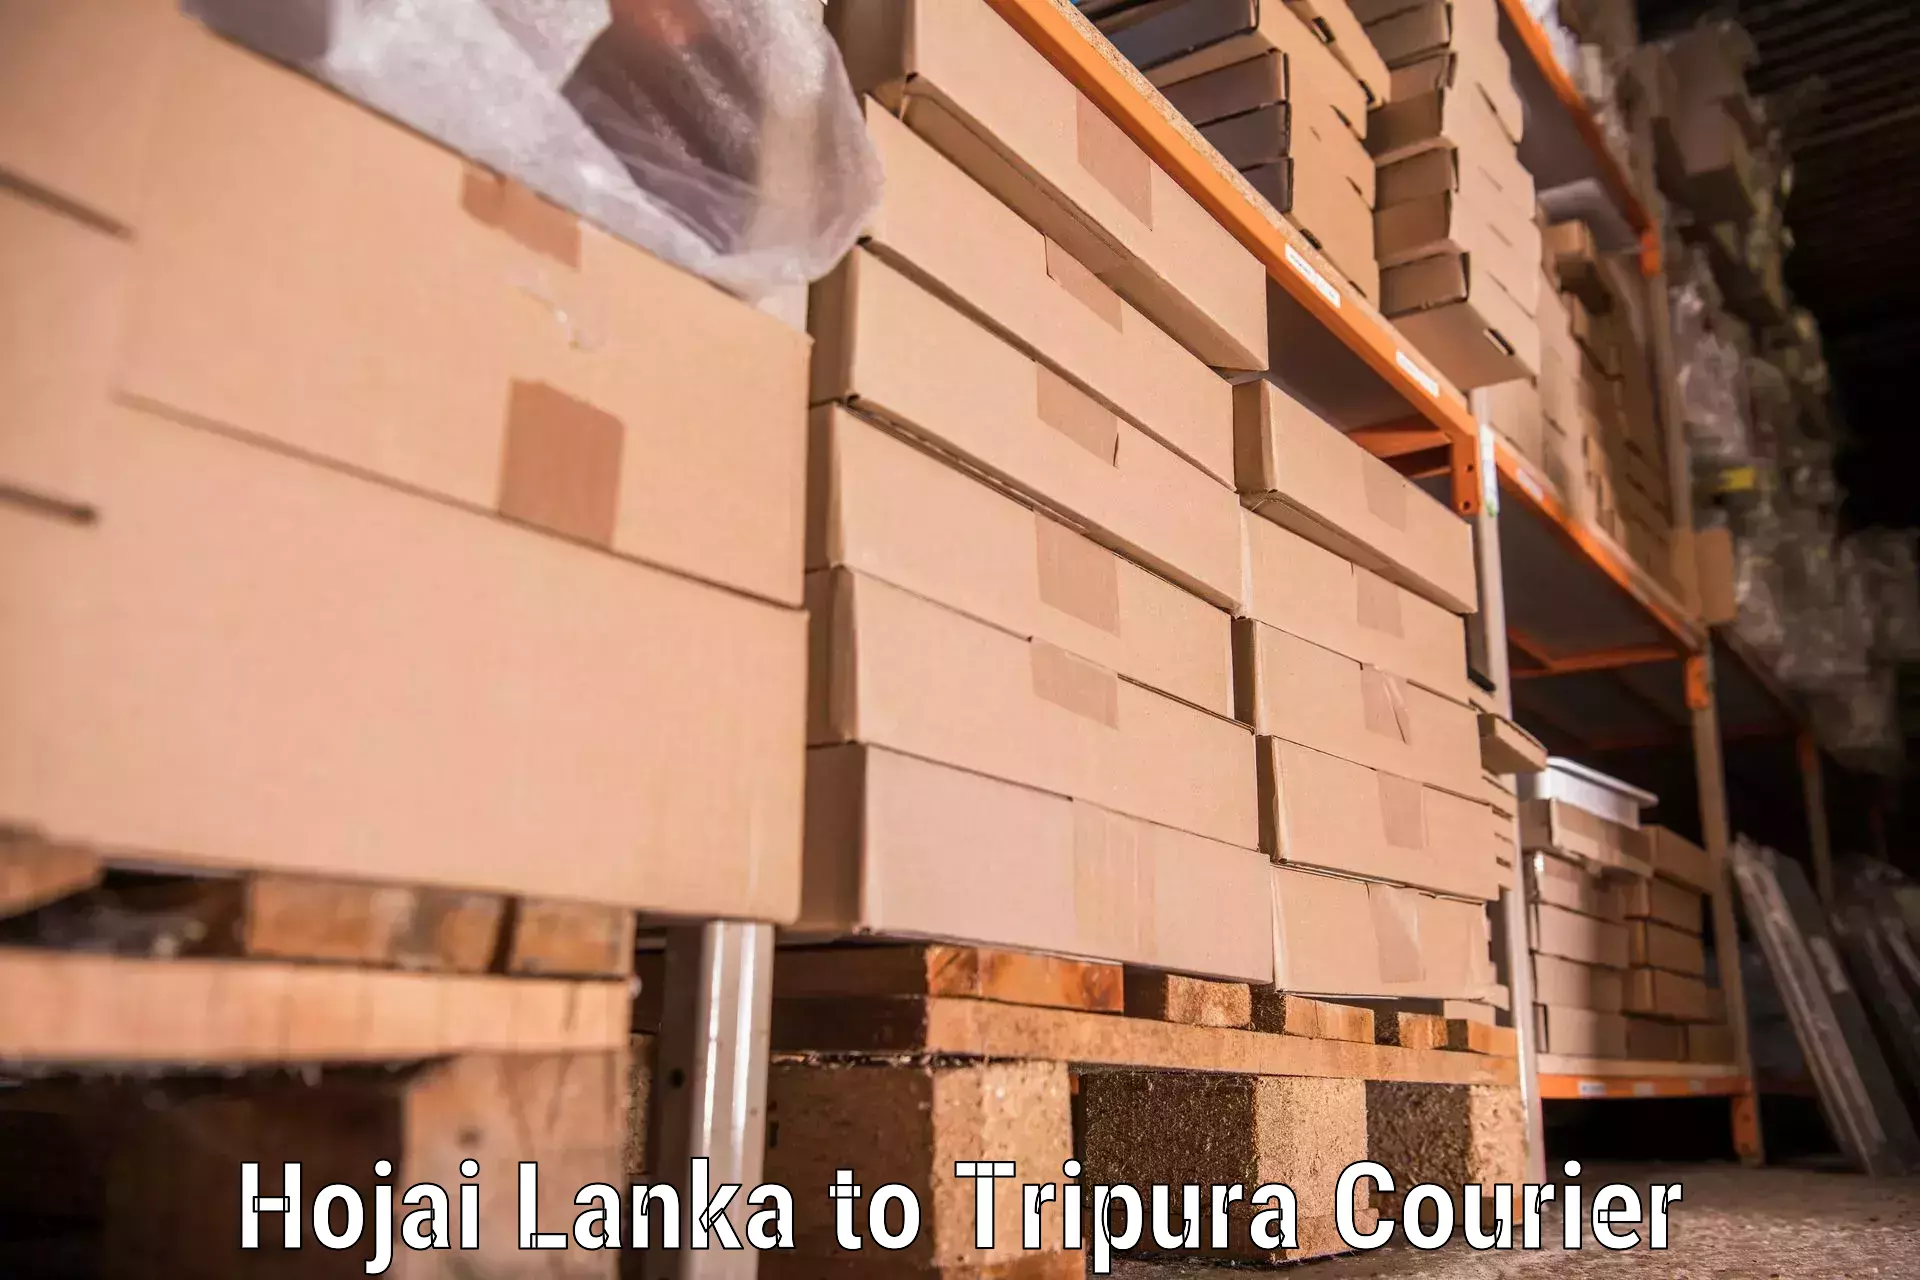 Efficient moving company in Hojai Lanka to Agartala